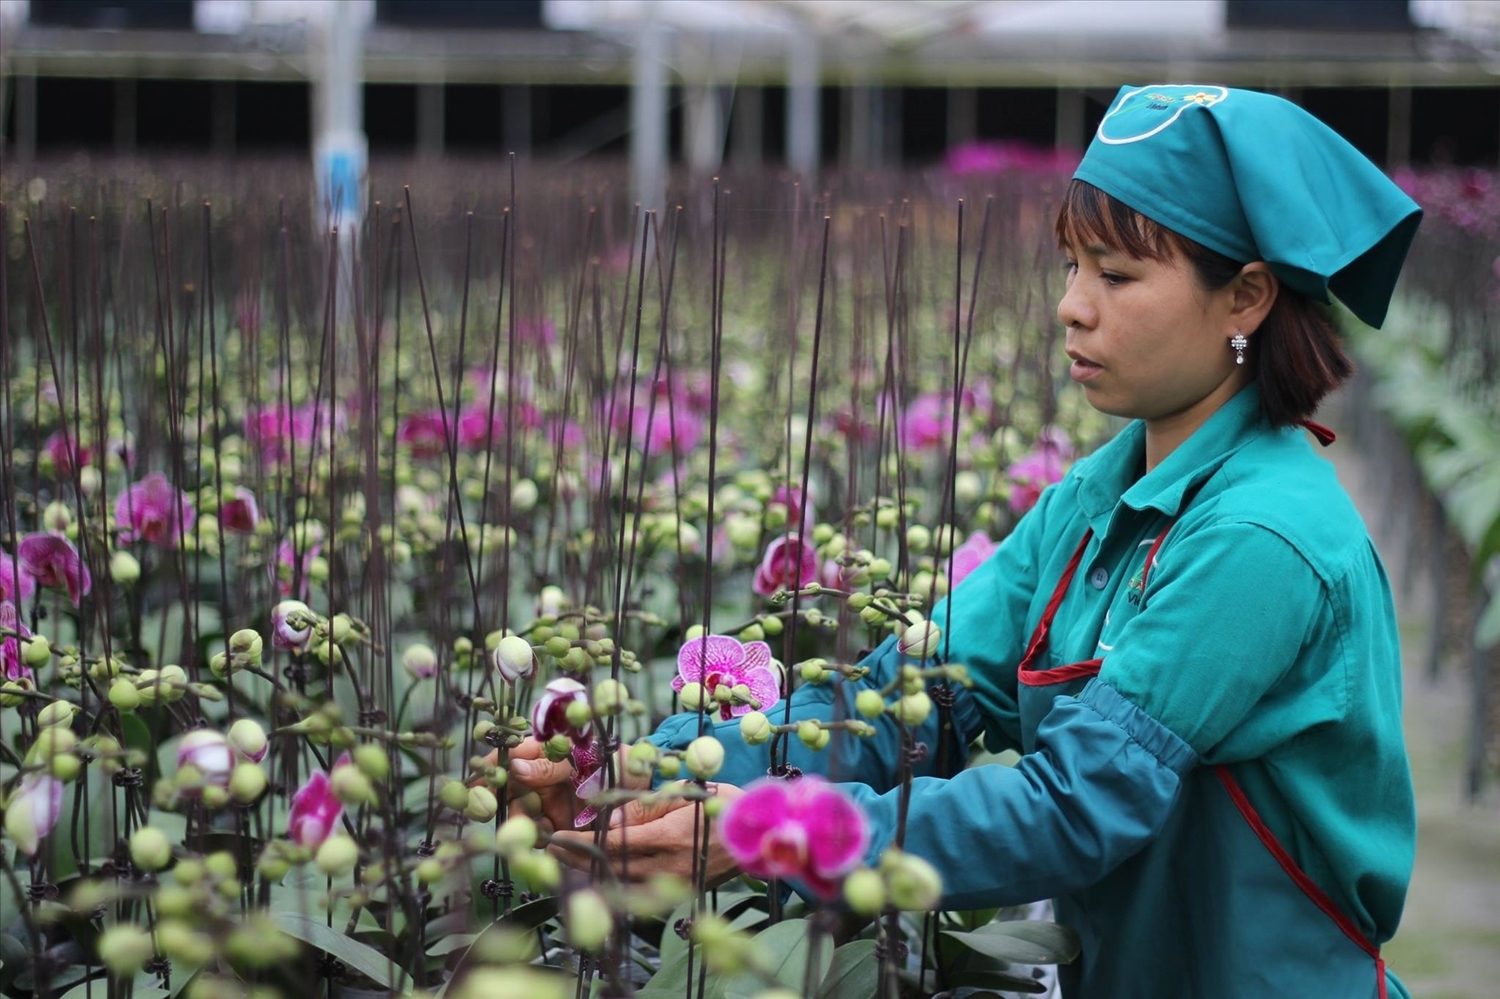 Mô hình sản xuất hoa lan ứng dụng công nghệ cao trong nhà kính tại huyện Đan Phượng lợi nhuận hàng tỷ đồng mỗi năm.